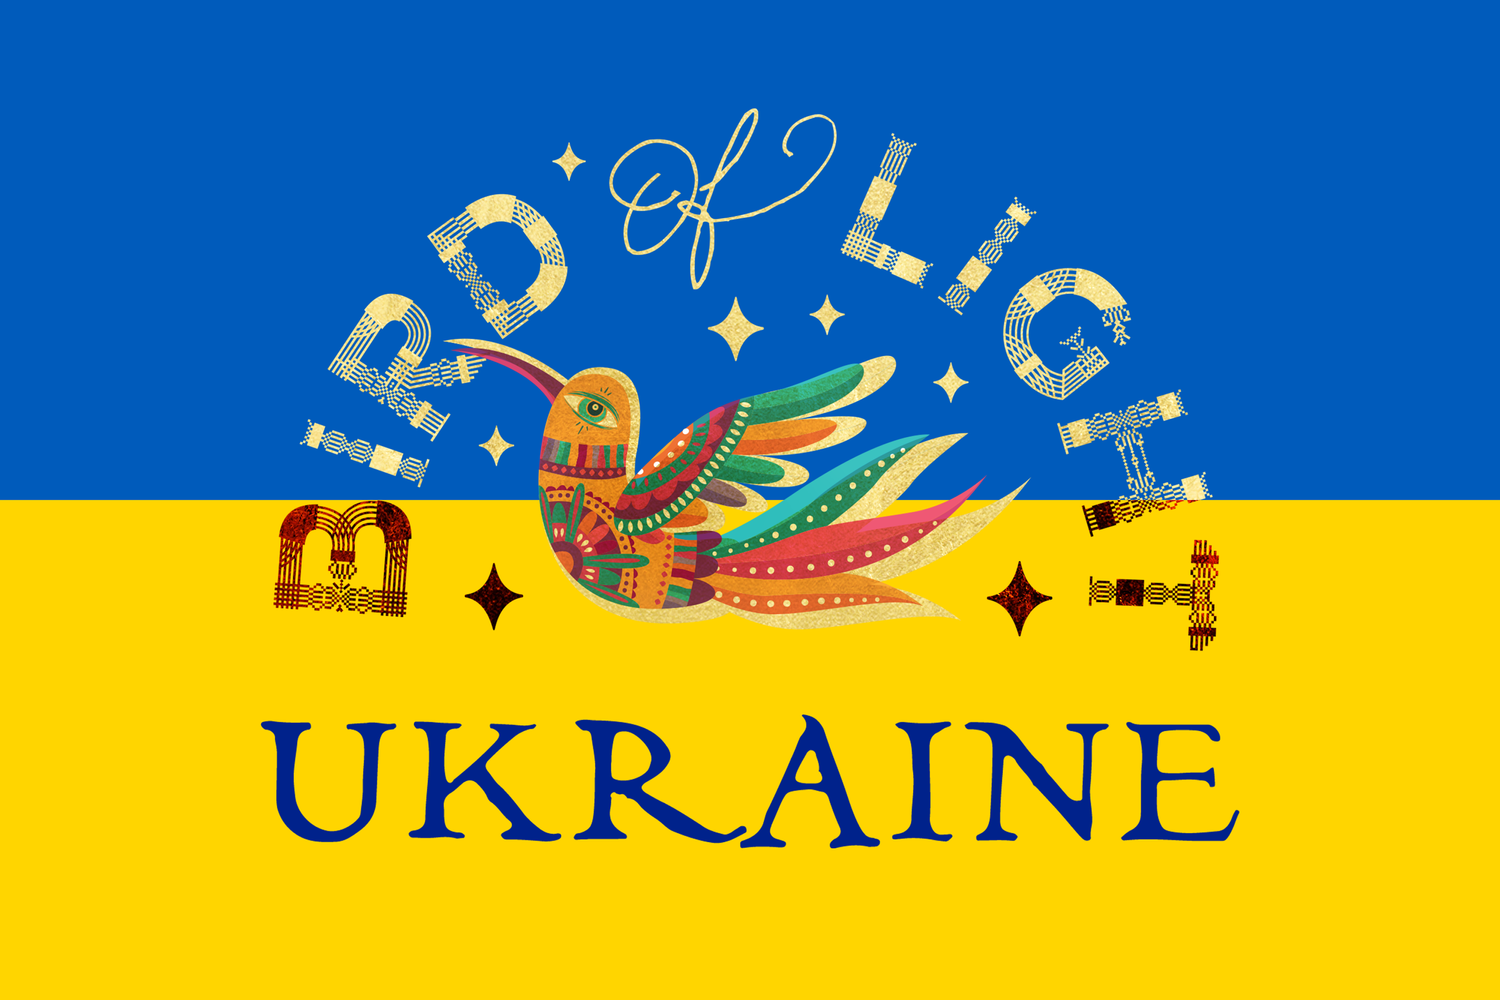 Bird of Light Ukraine